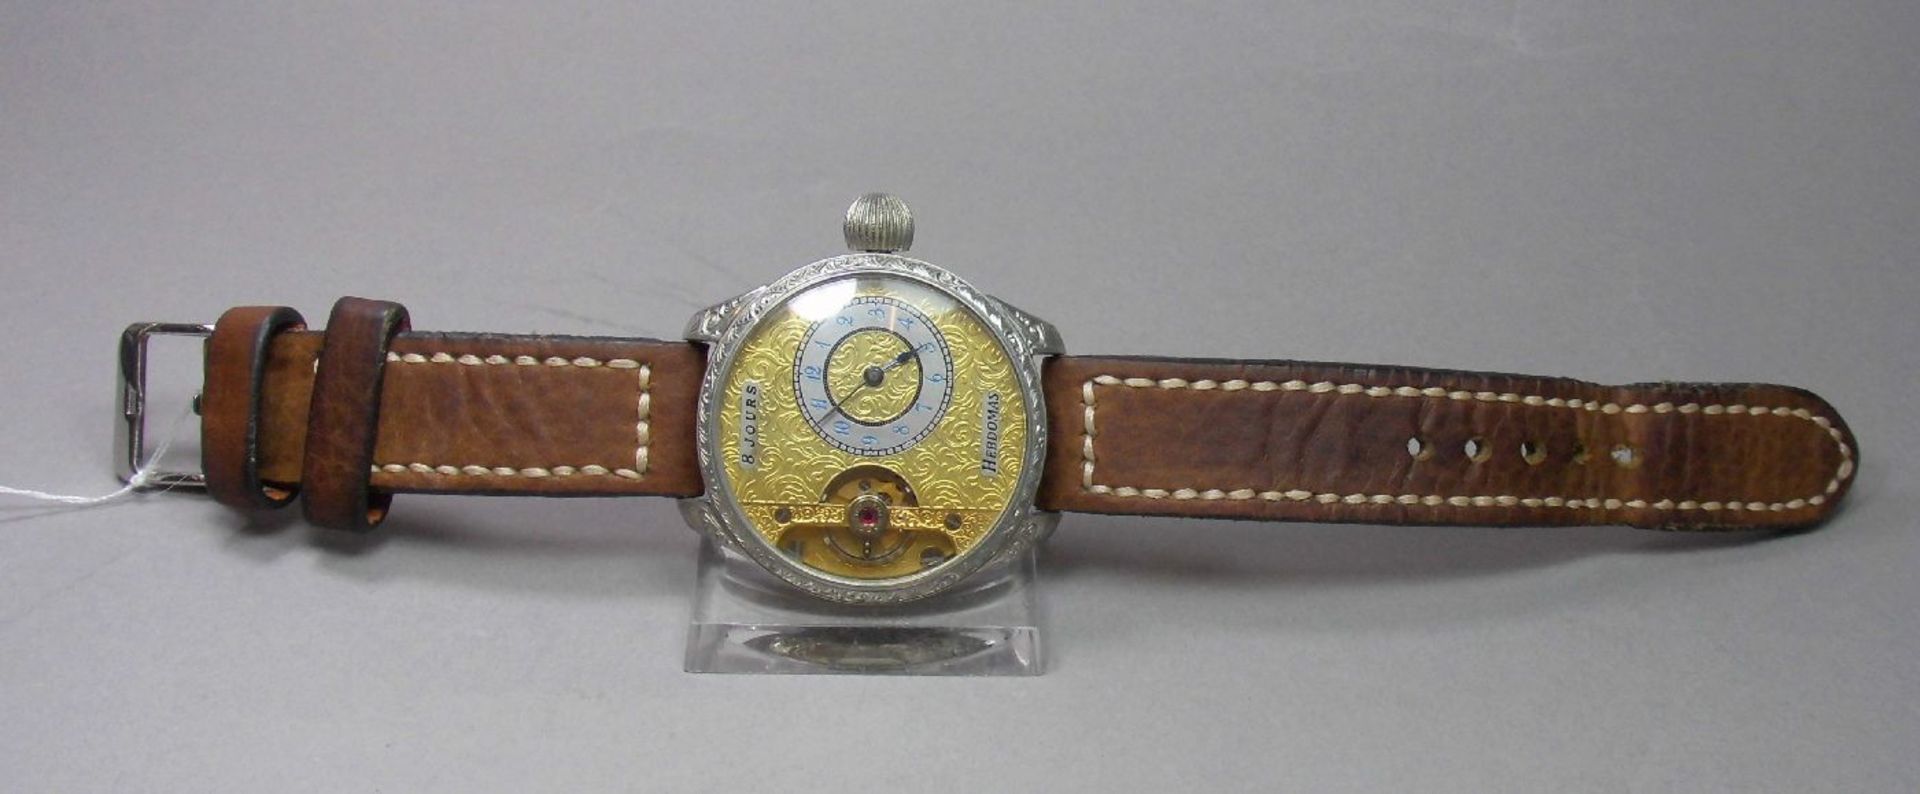 ARMBANDUHR, gearbeitet aus einer Taschenuhr / Mariage / wristwatch, 20. Jh., Handaufzug (Krone).